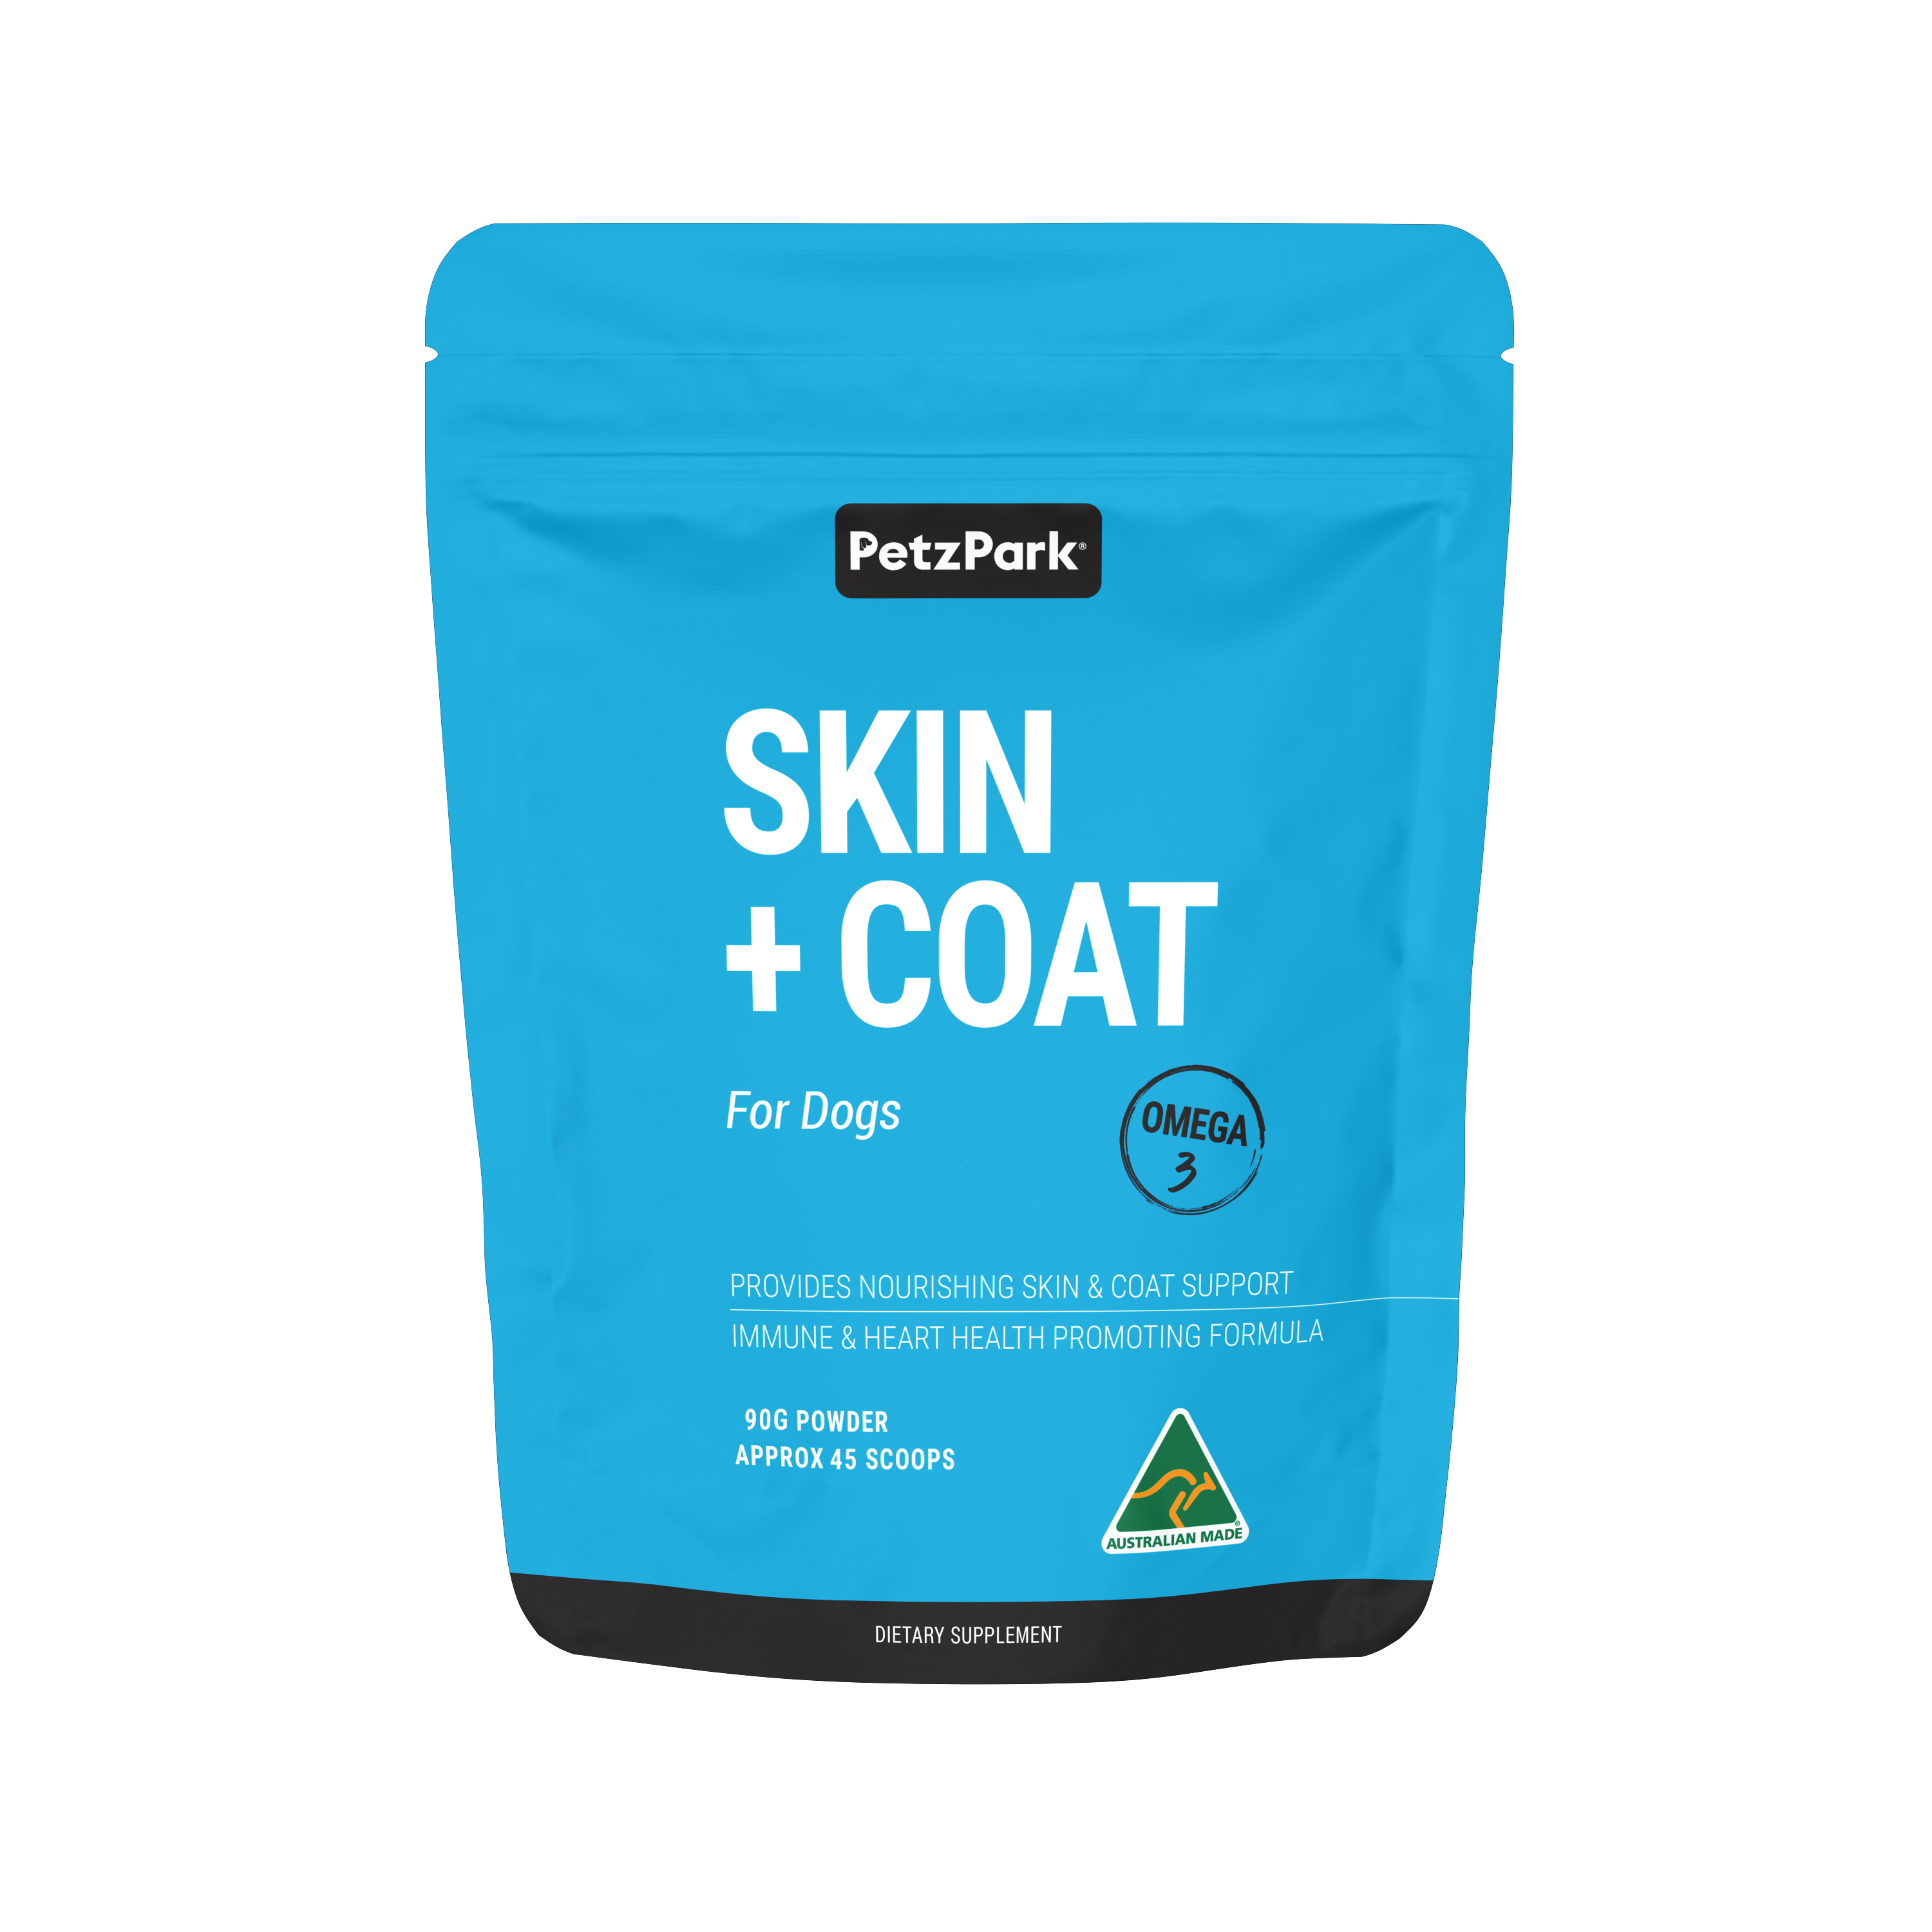 Petz Park Skin + Coat for Dogs, polvo para perros Omega-3 para una piel, pelaje, corazón más saludables y más